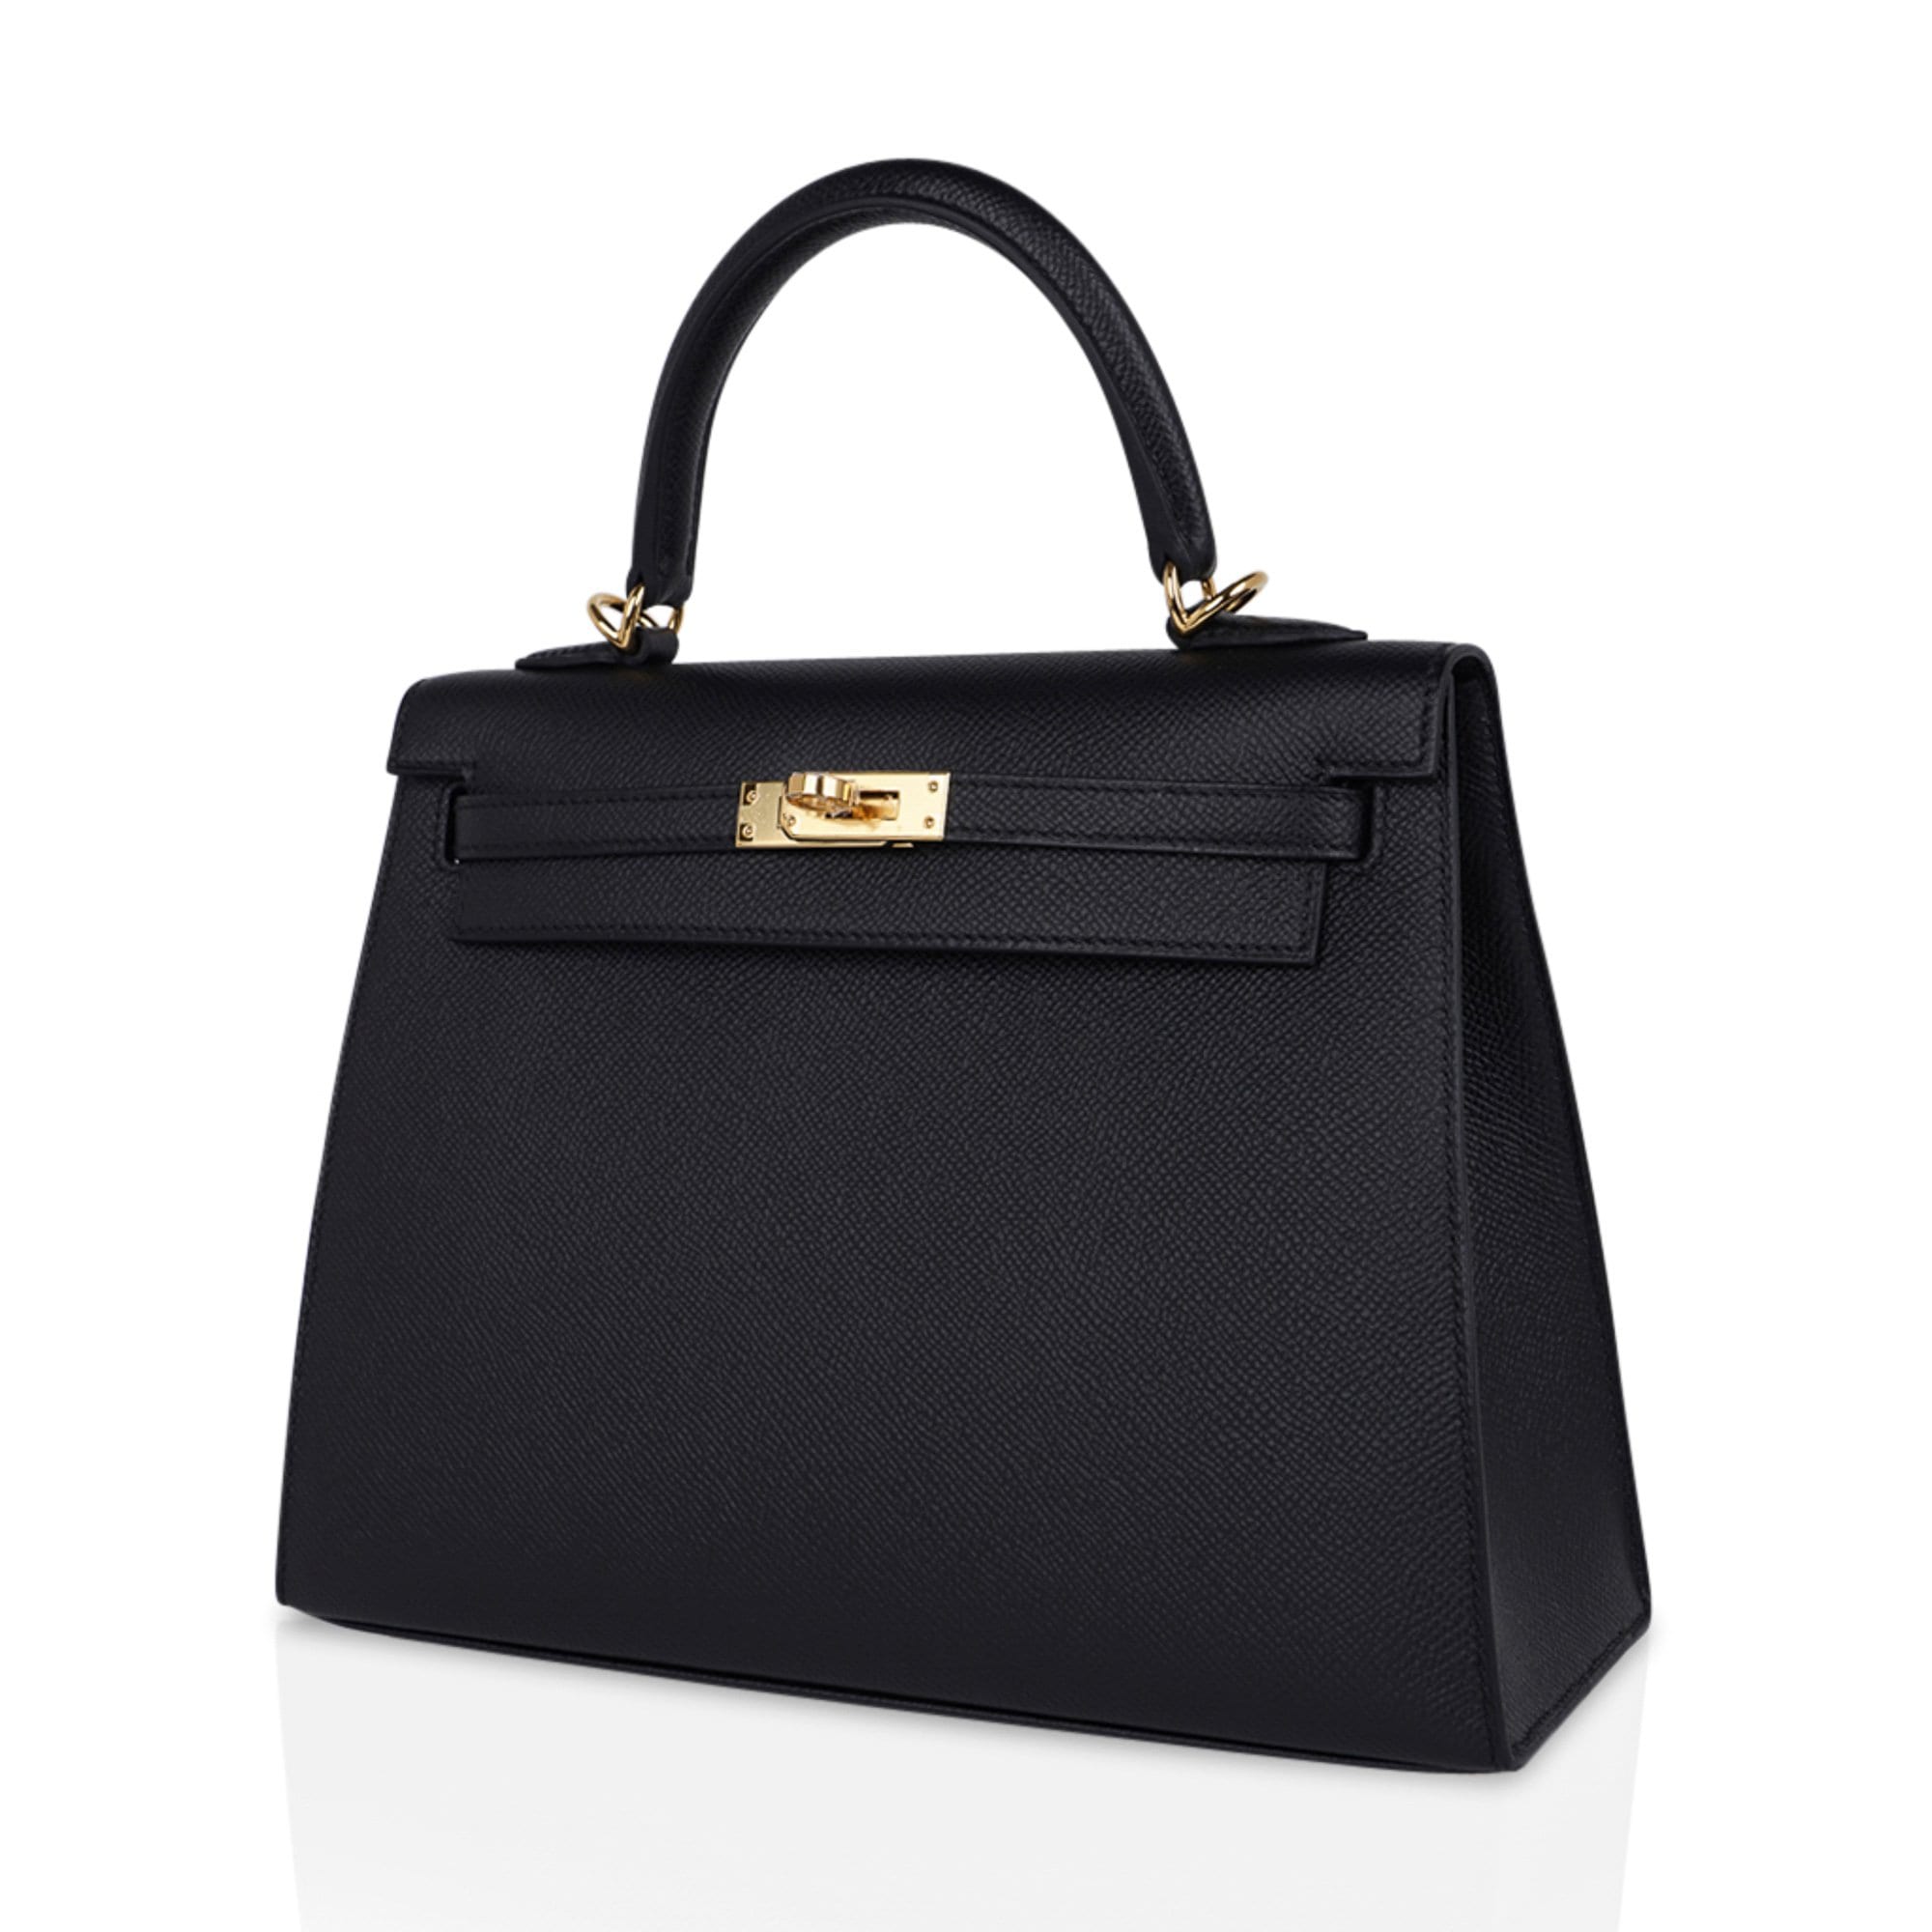 Hermes Kelly 25 Sellier in Black, Women's Fashion, Bags & Wallets